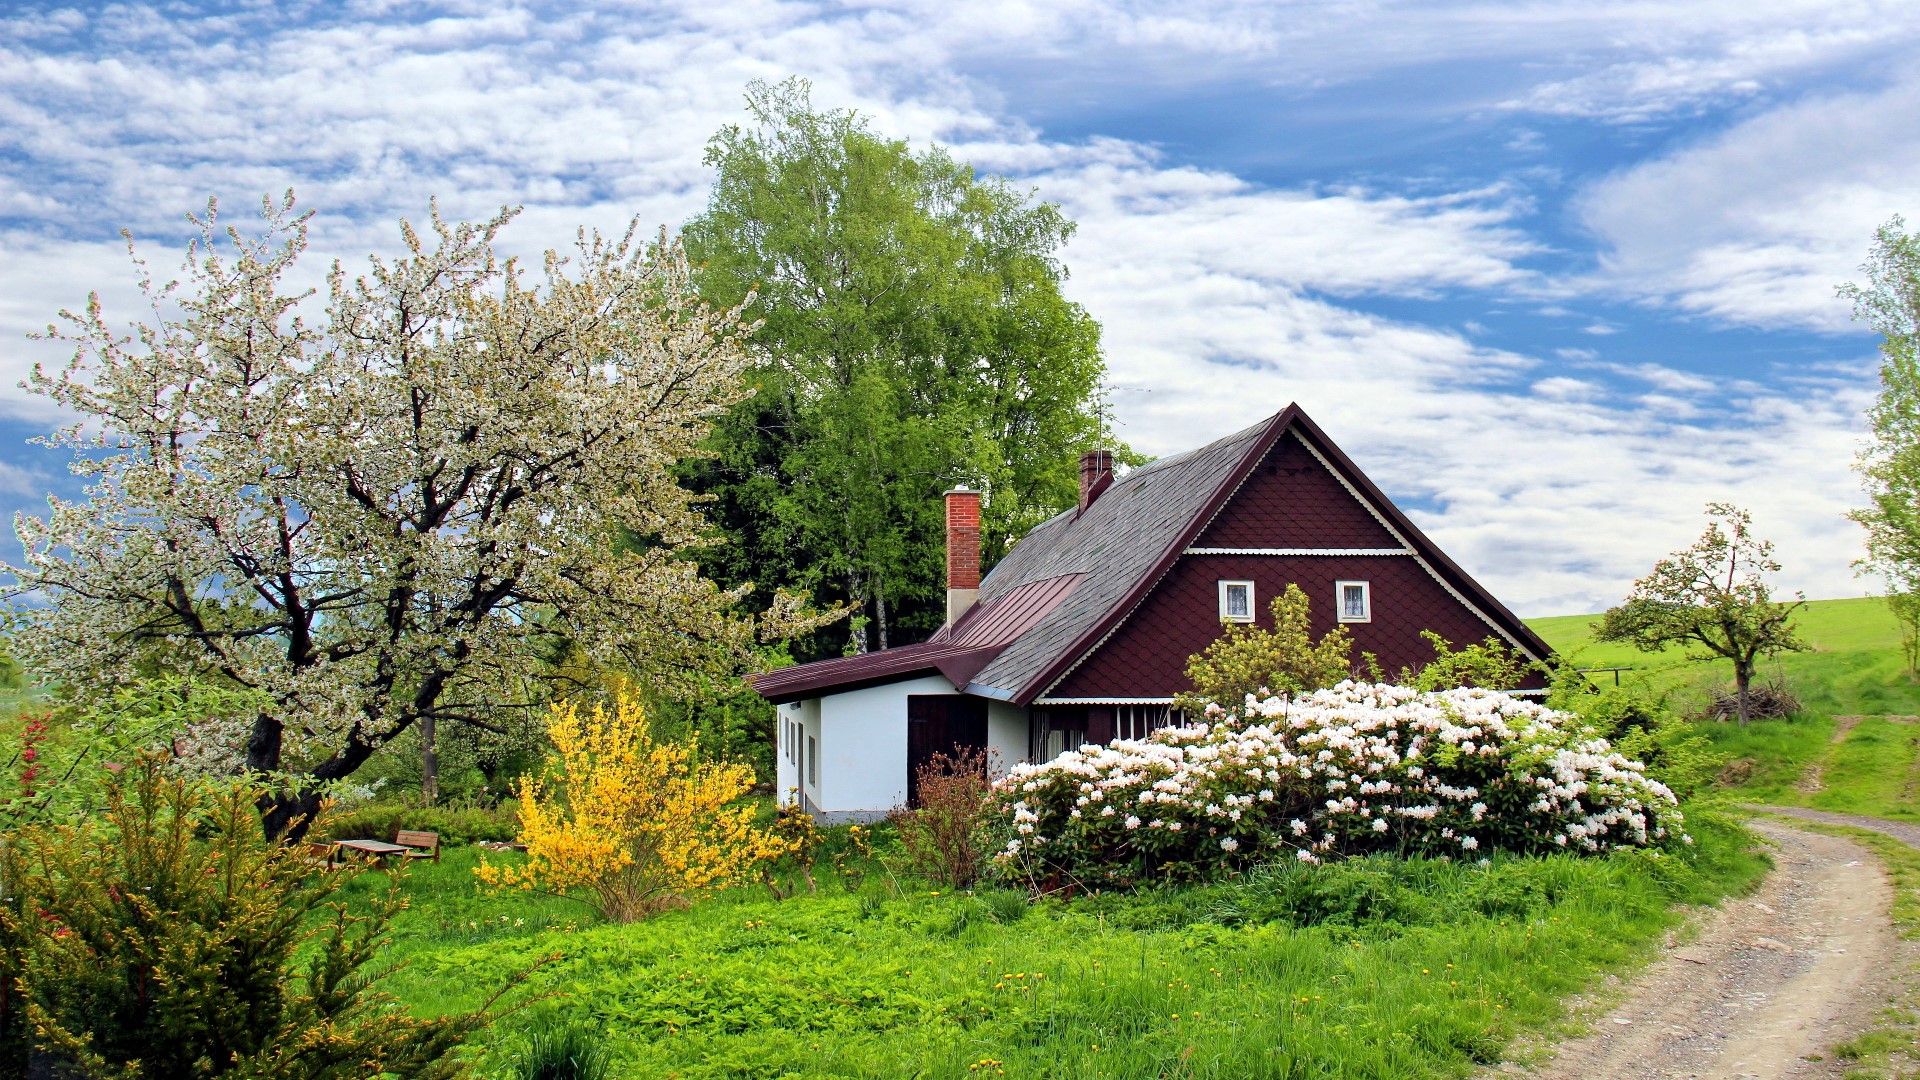 Spring Cottage Landscape Scenery- HD 4K